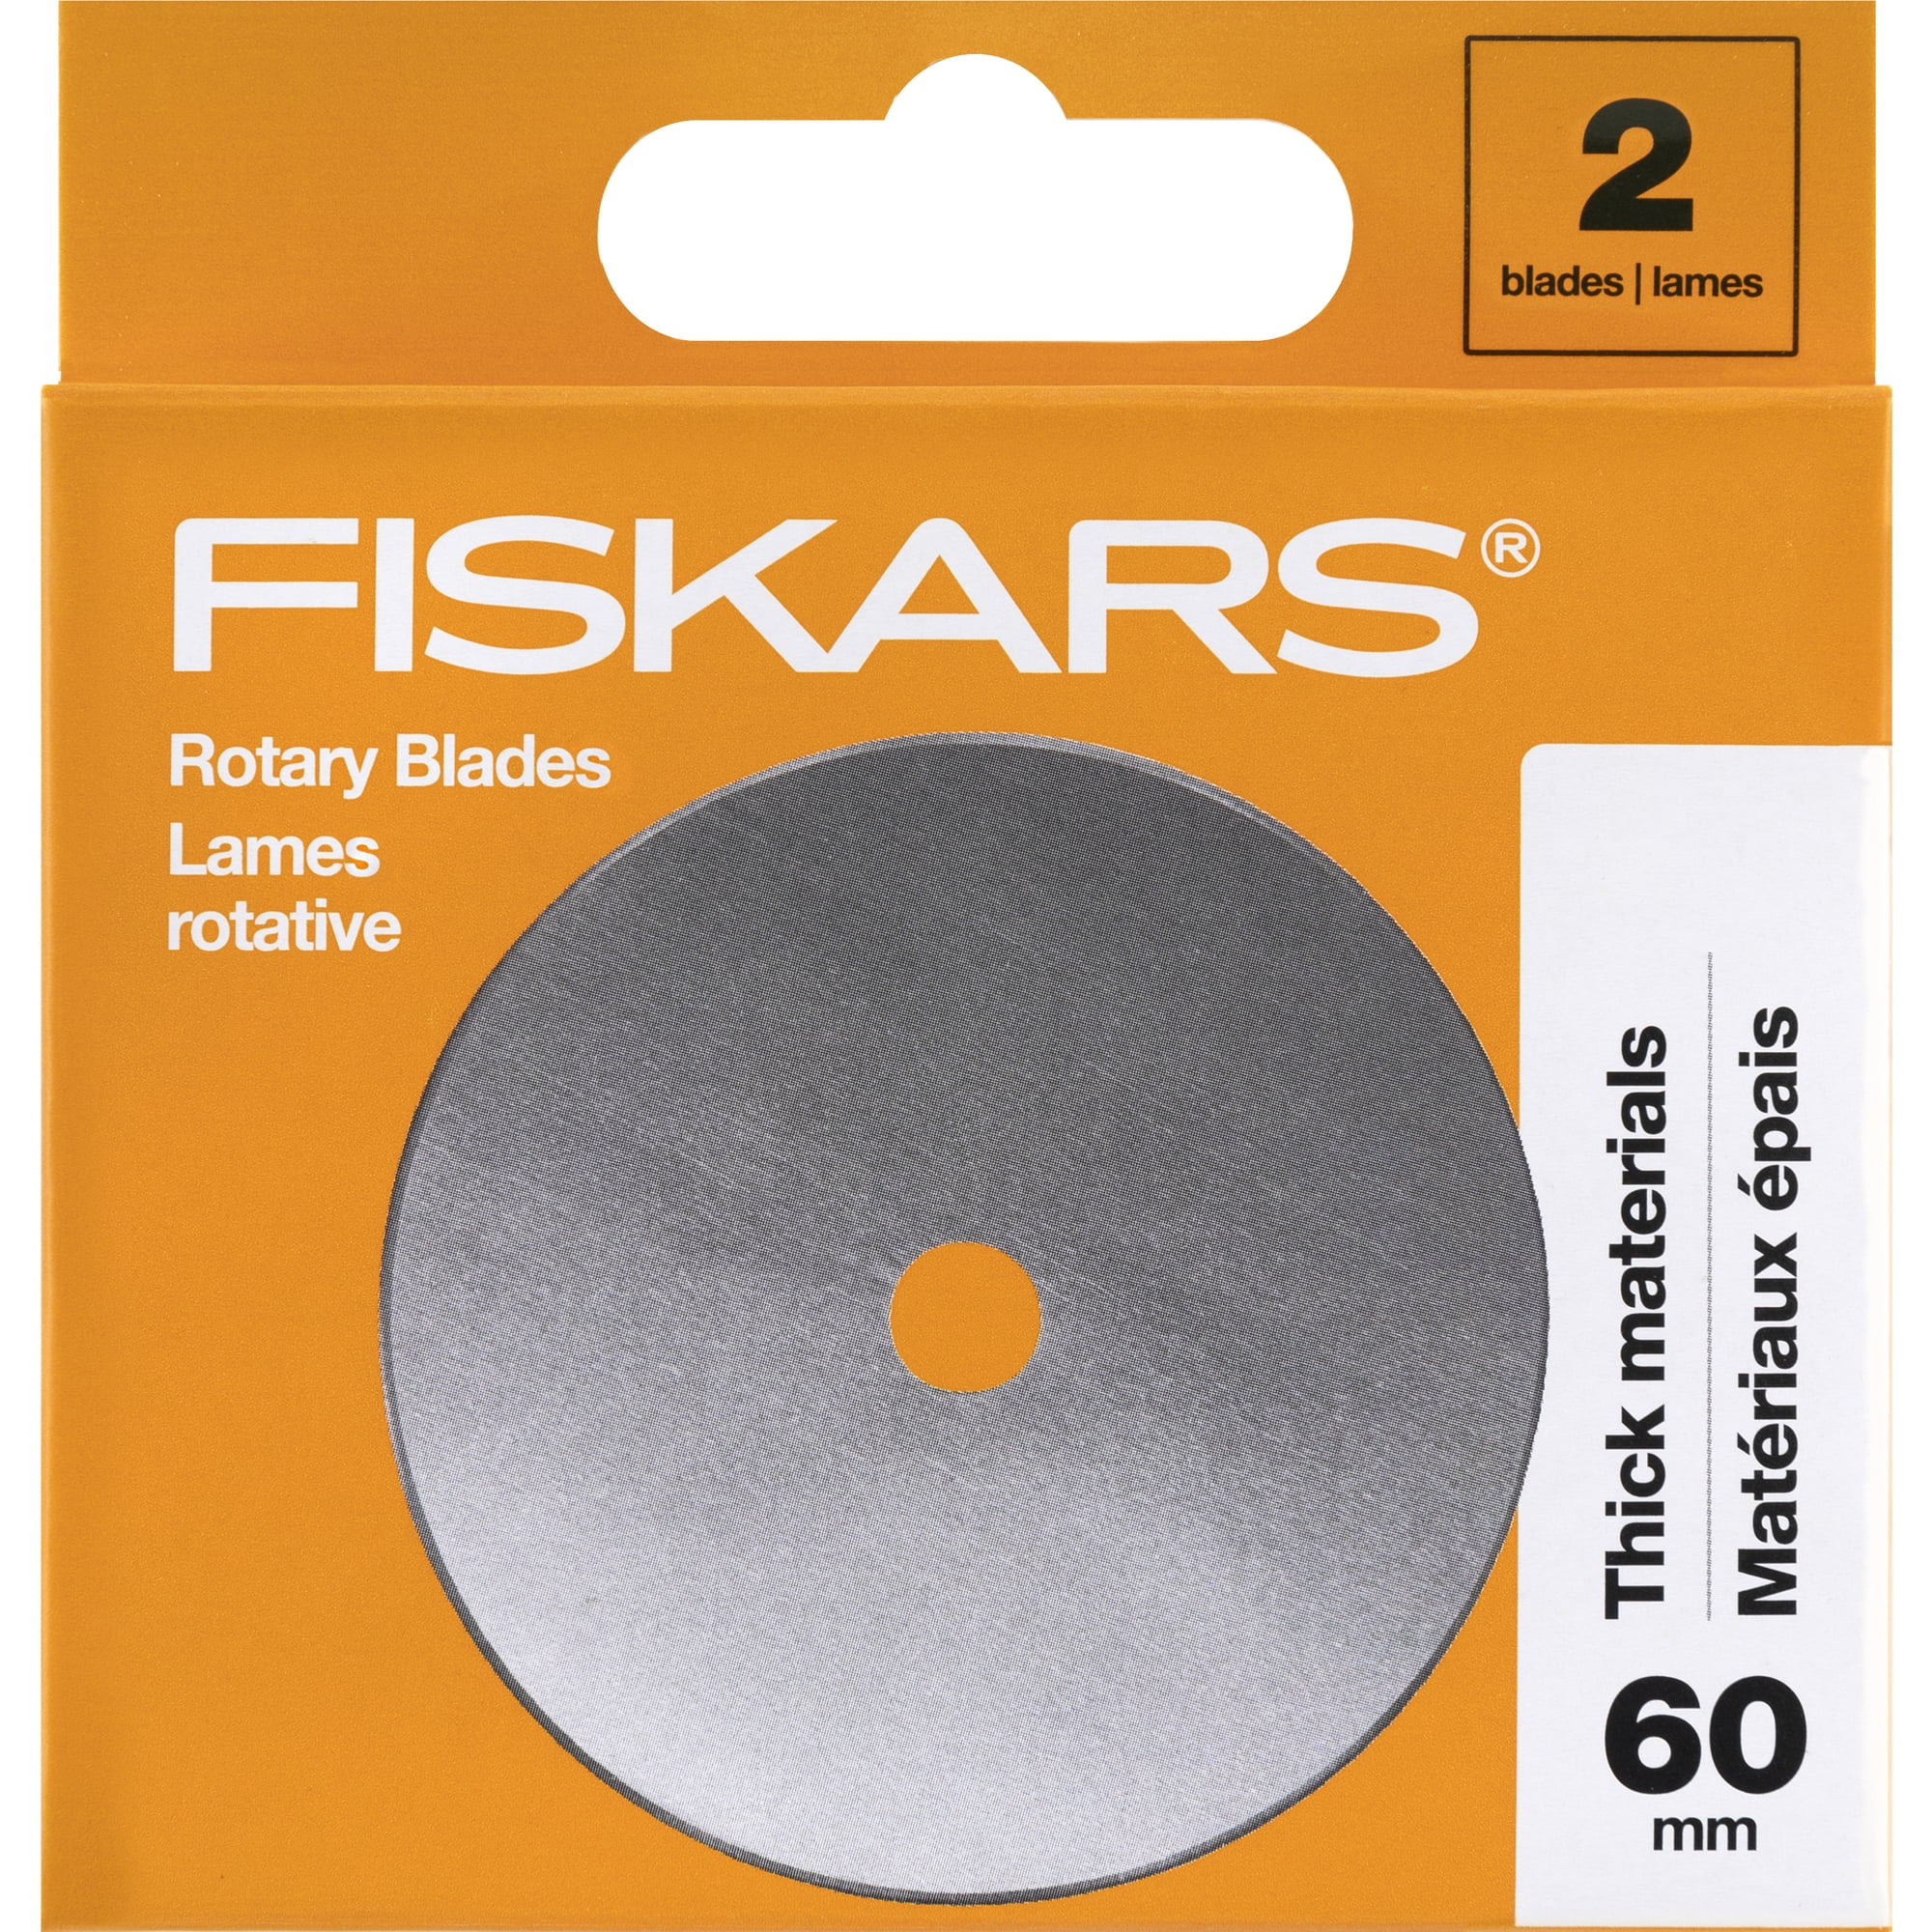 Fiskars Titanium Comfort Stick Rotary Cutter - 45mm